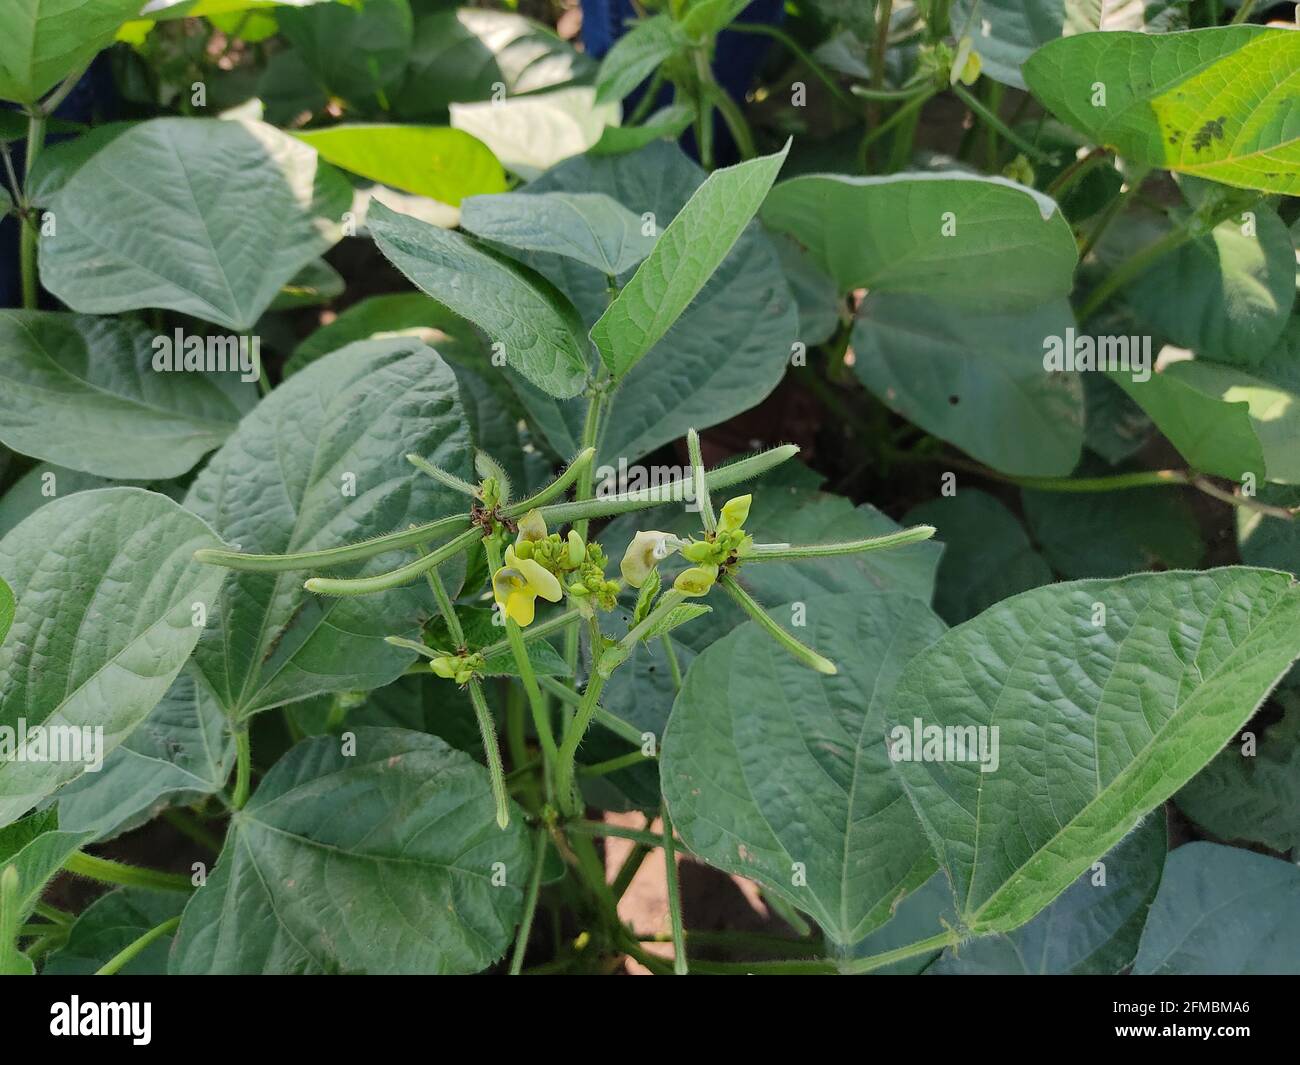 Gros plan sur la récolte de haricots verts de Mung dans le domaine agricole, les gousses vertes de haricots de Mung (Vigna radiata) et les feuilles de haricots de mung sur la tige de haricots de mung Banque D'Images